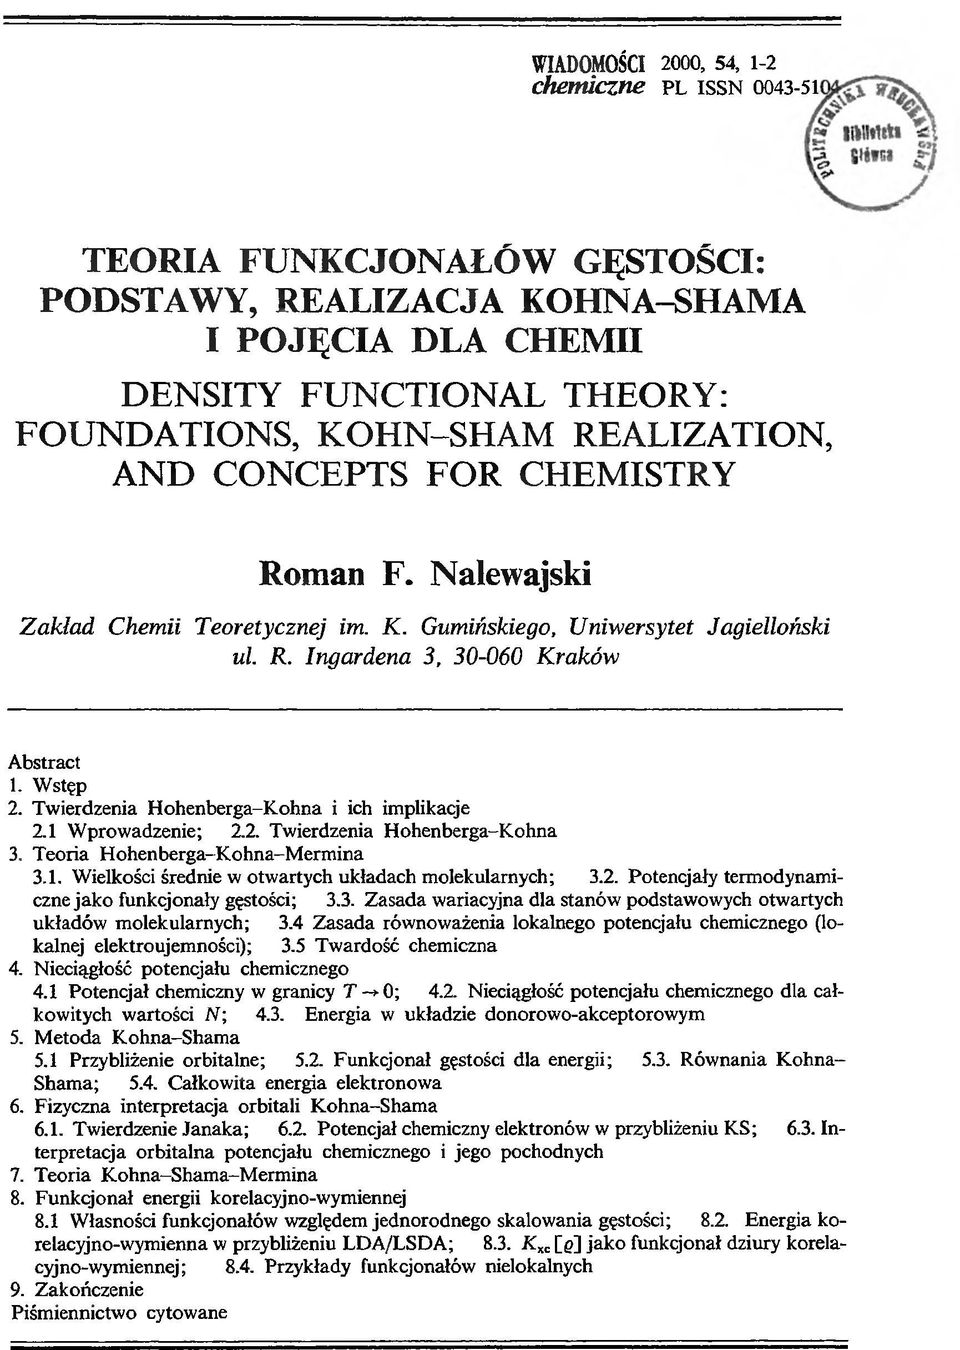 Twierdzenia Hohenberga-Kohna i ich implikacje 2.1 Wprowadzenie; 2.2. Twierdzenia Hohenberga-Kohna 3. Teoria Hohenberga-Kohna-Mermina 3.1. Wielkości średnie w otwartych układach molekularnych; 3.2. Potencjały termodynamiczne jako funkcjonały gęstości; 3.